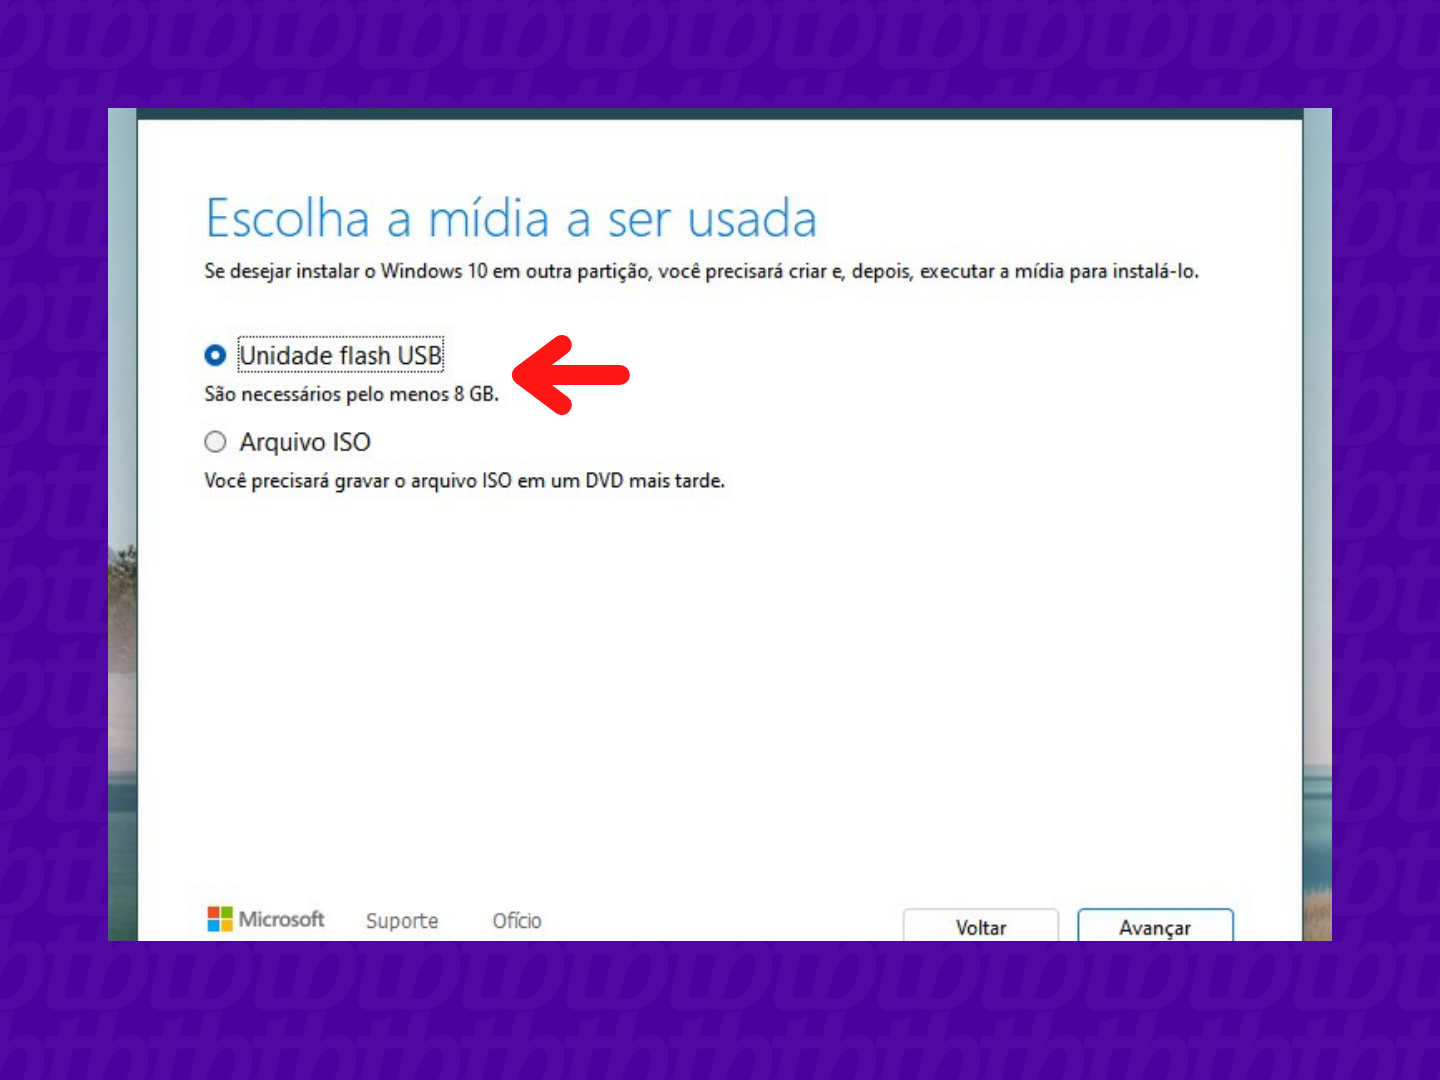 Tela do Windows com seta indicando a opção “Unidade flash USB”.